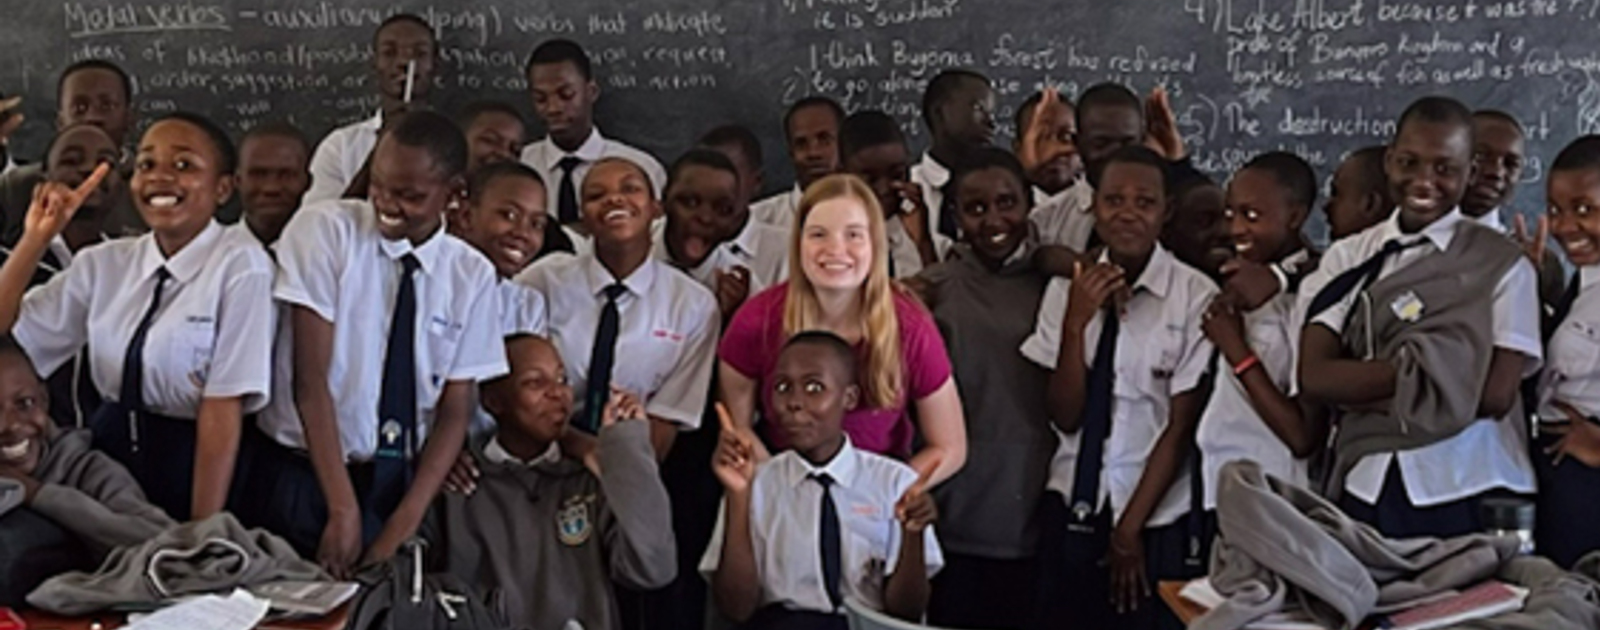 Una estudiante de negocios en Notre Dame pasa su verano enseñando y trabajando como voluntaria en una escuela para discapacitados en Uganda |  Noticias |  Noticias de Notre Dame